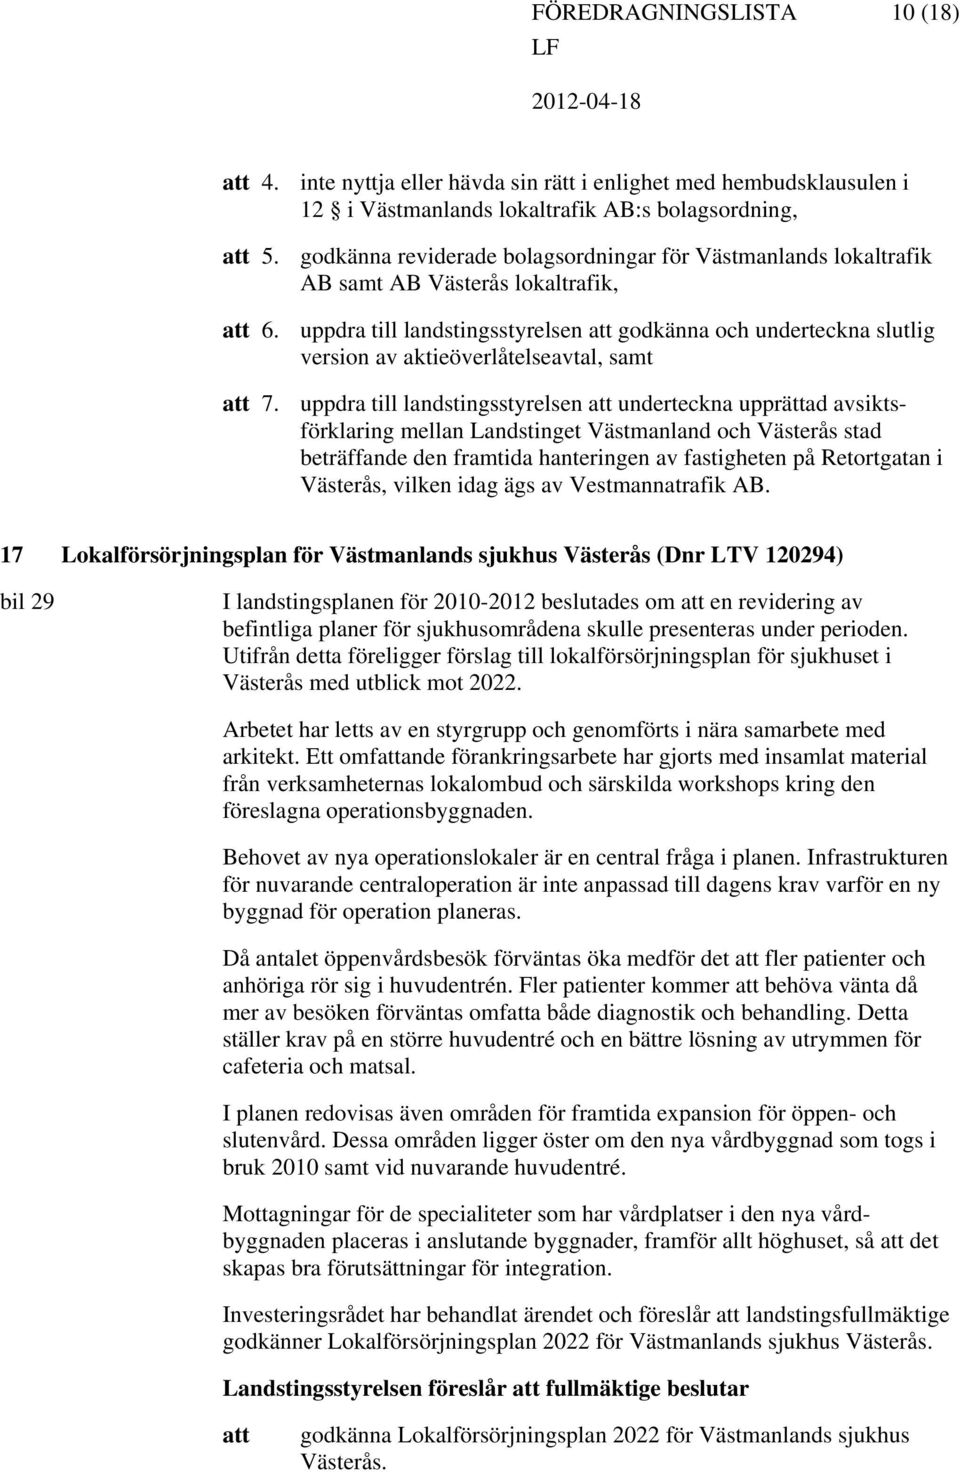 Västerås lokaltrafik, uppdra till landstingsstyrelsen godkänna och underteckna slutlig version av aktieöverlåtelseavtal, samt uppdra till landstingsstyrelsen underteckna upprättad avsiktsförklaring